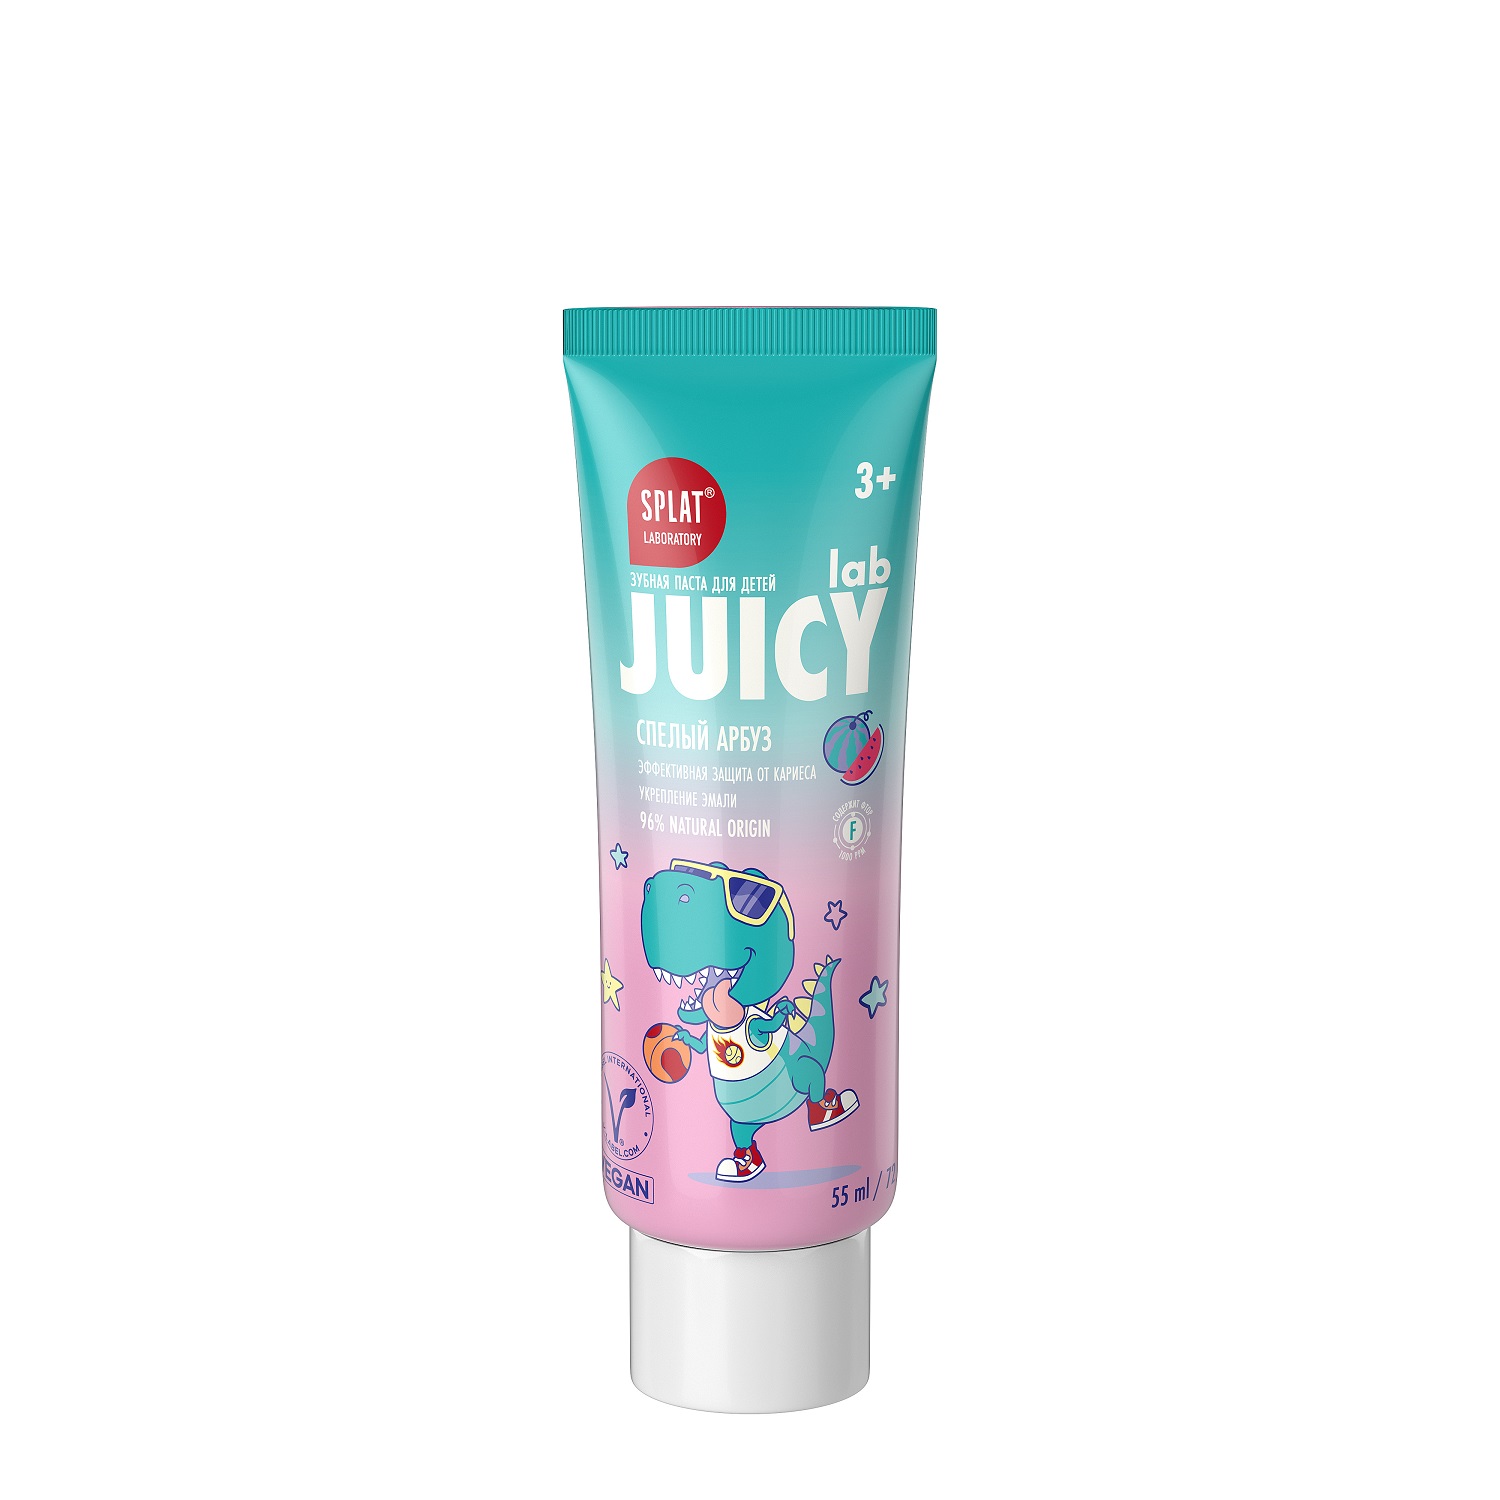 Splat Детская зубная паста со фтором и блестками Спелый арбуз 3+, 55 мл (Splat, Juicy)